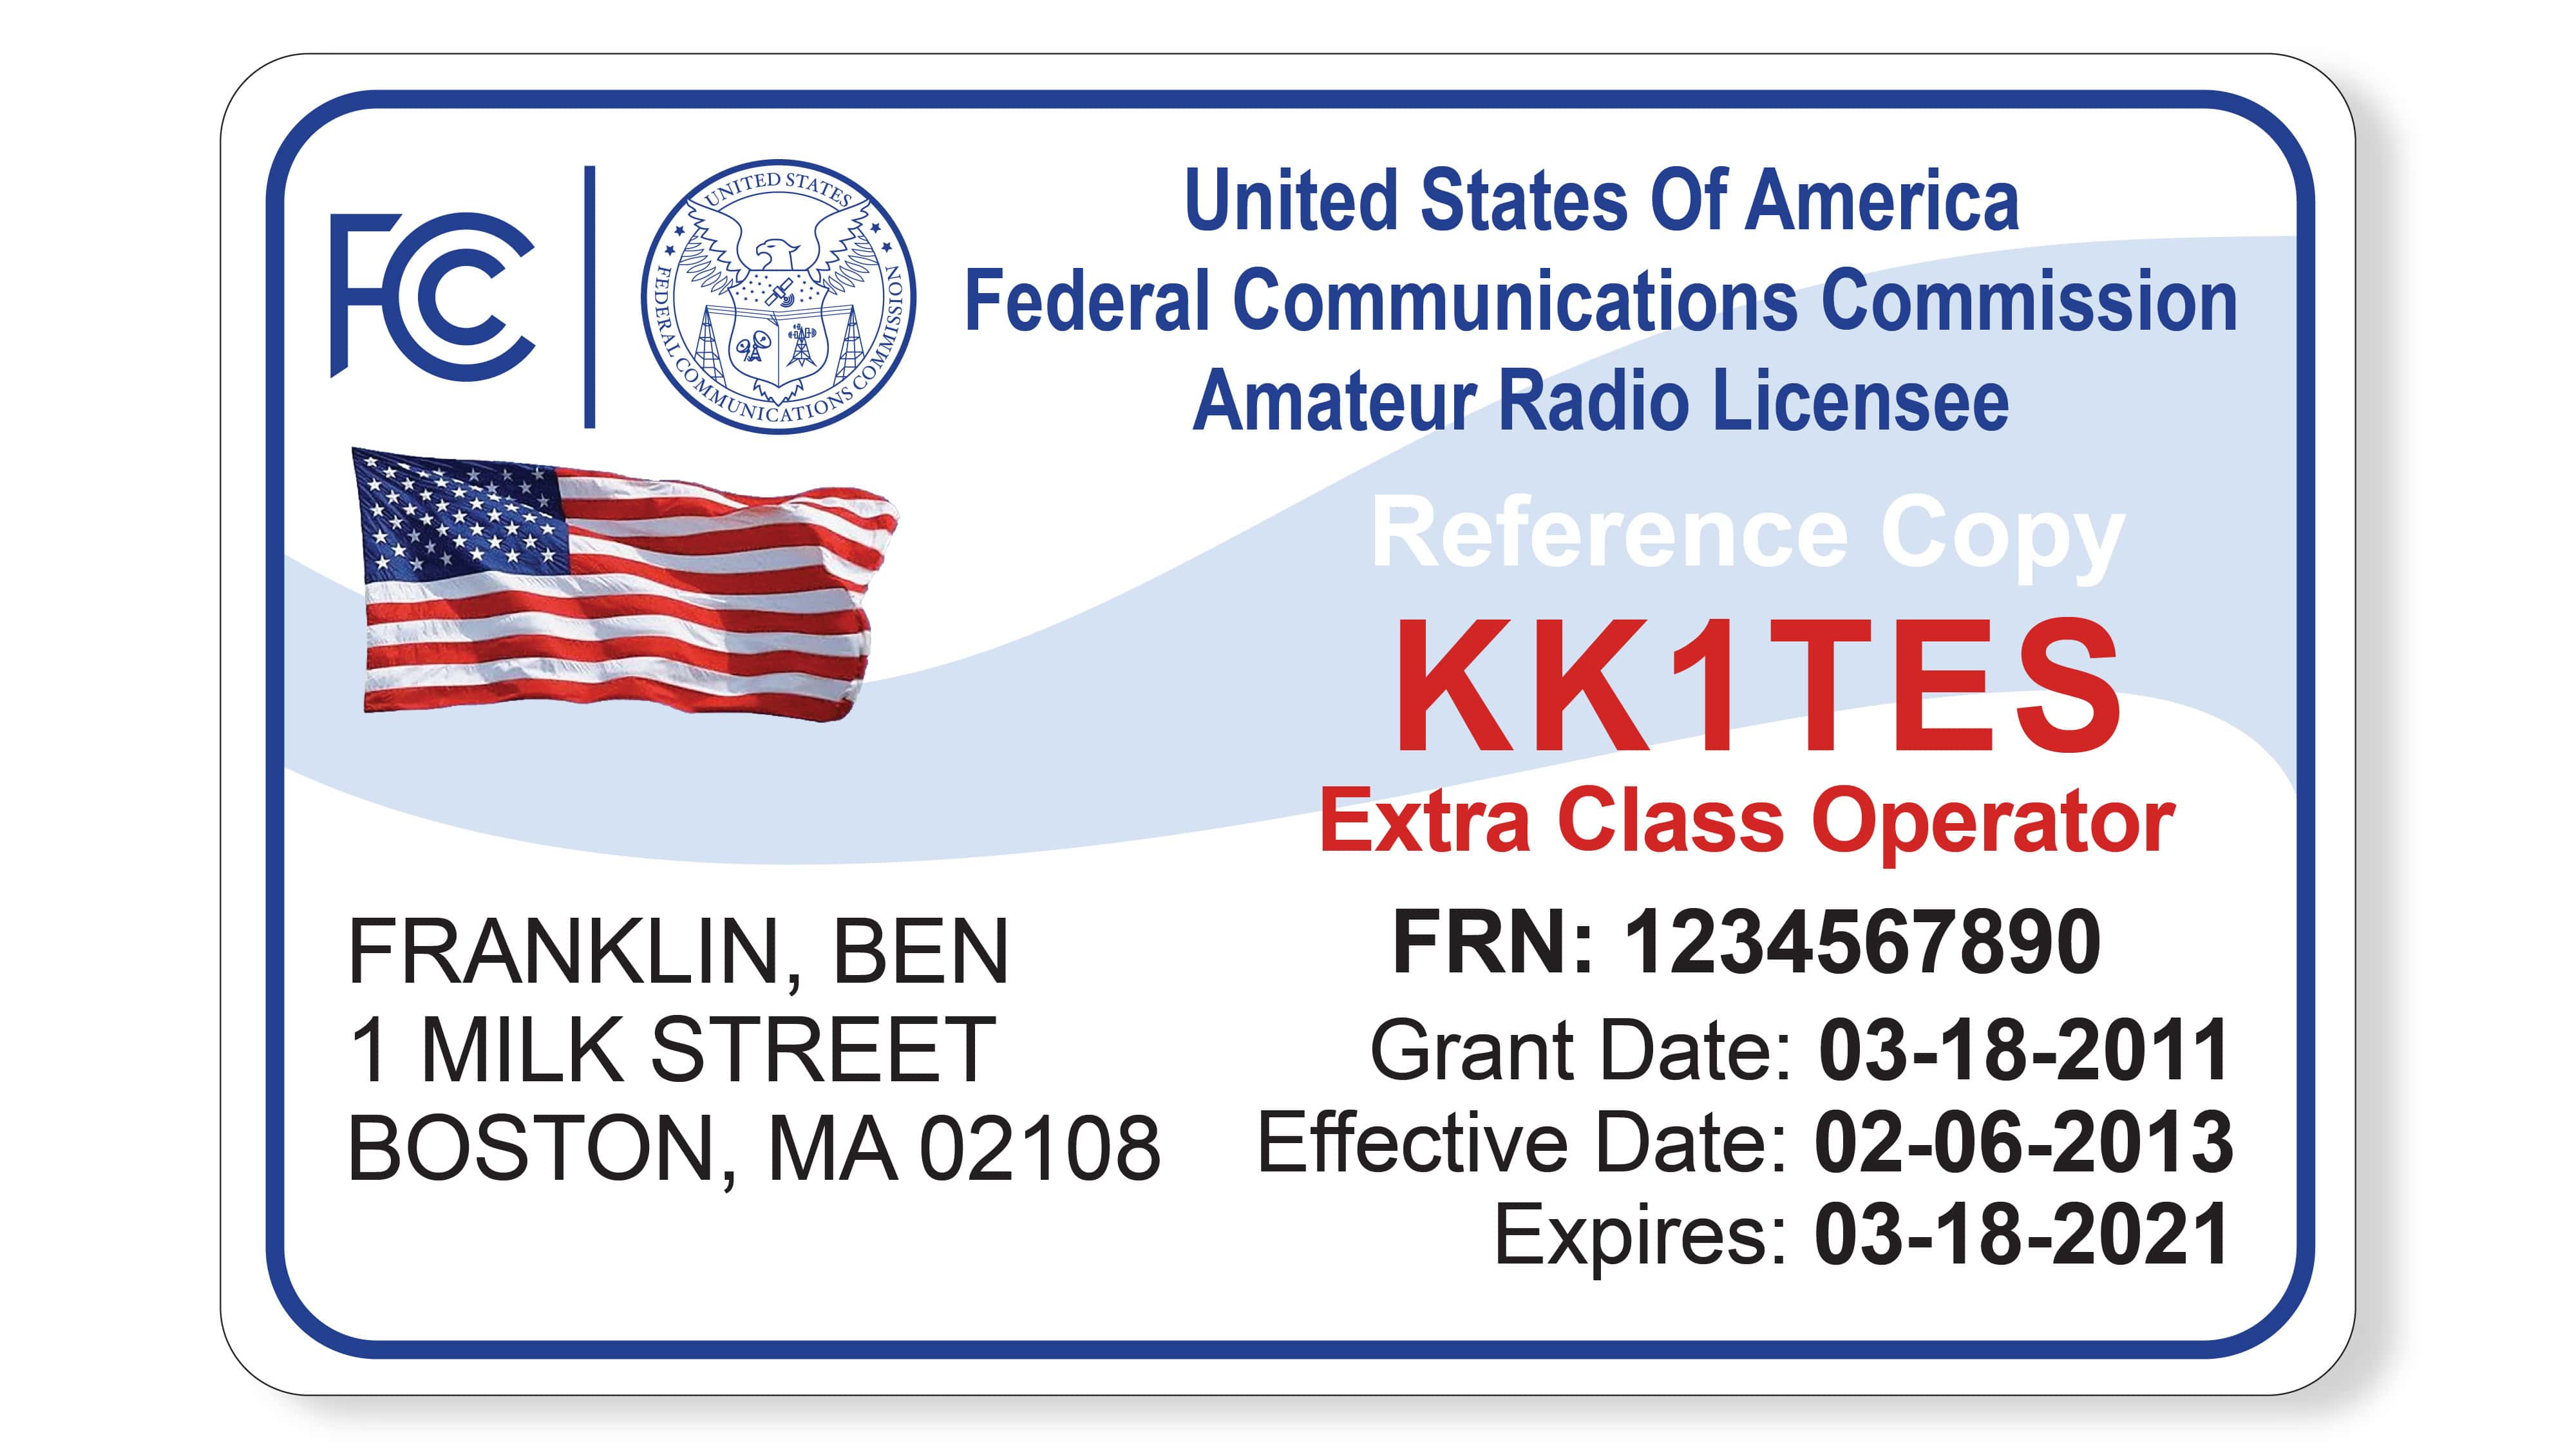 FCC Amateur Radio License ID Card Porn Photo Hd